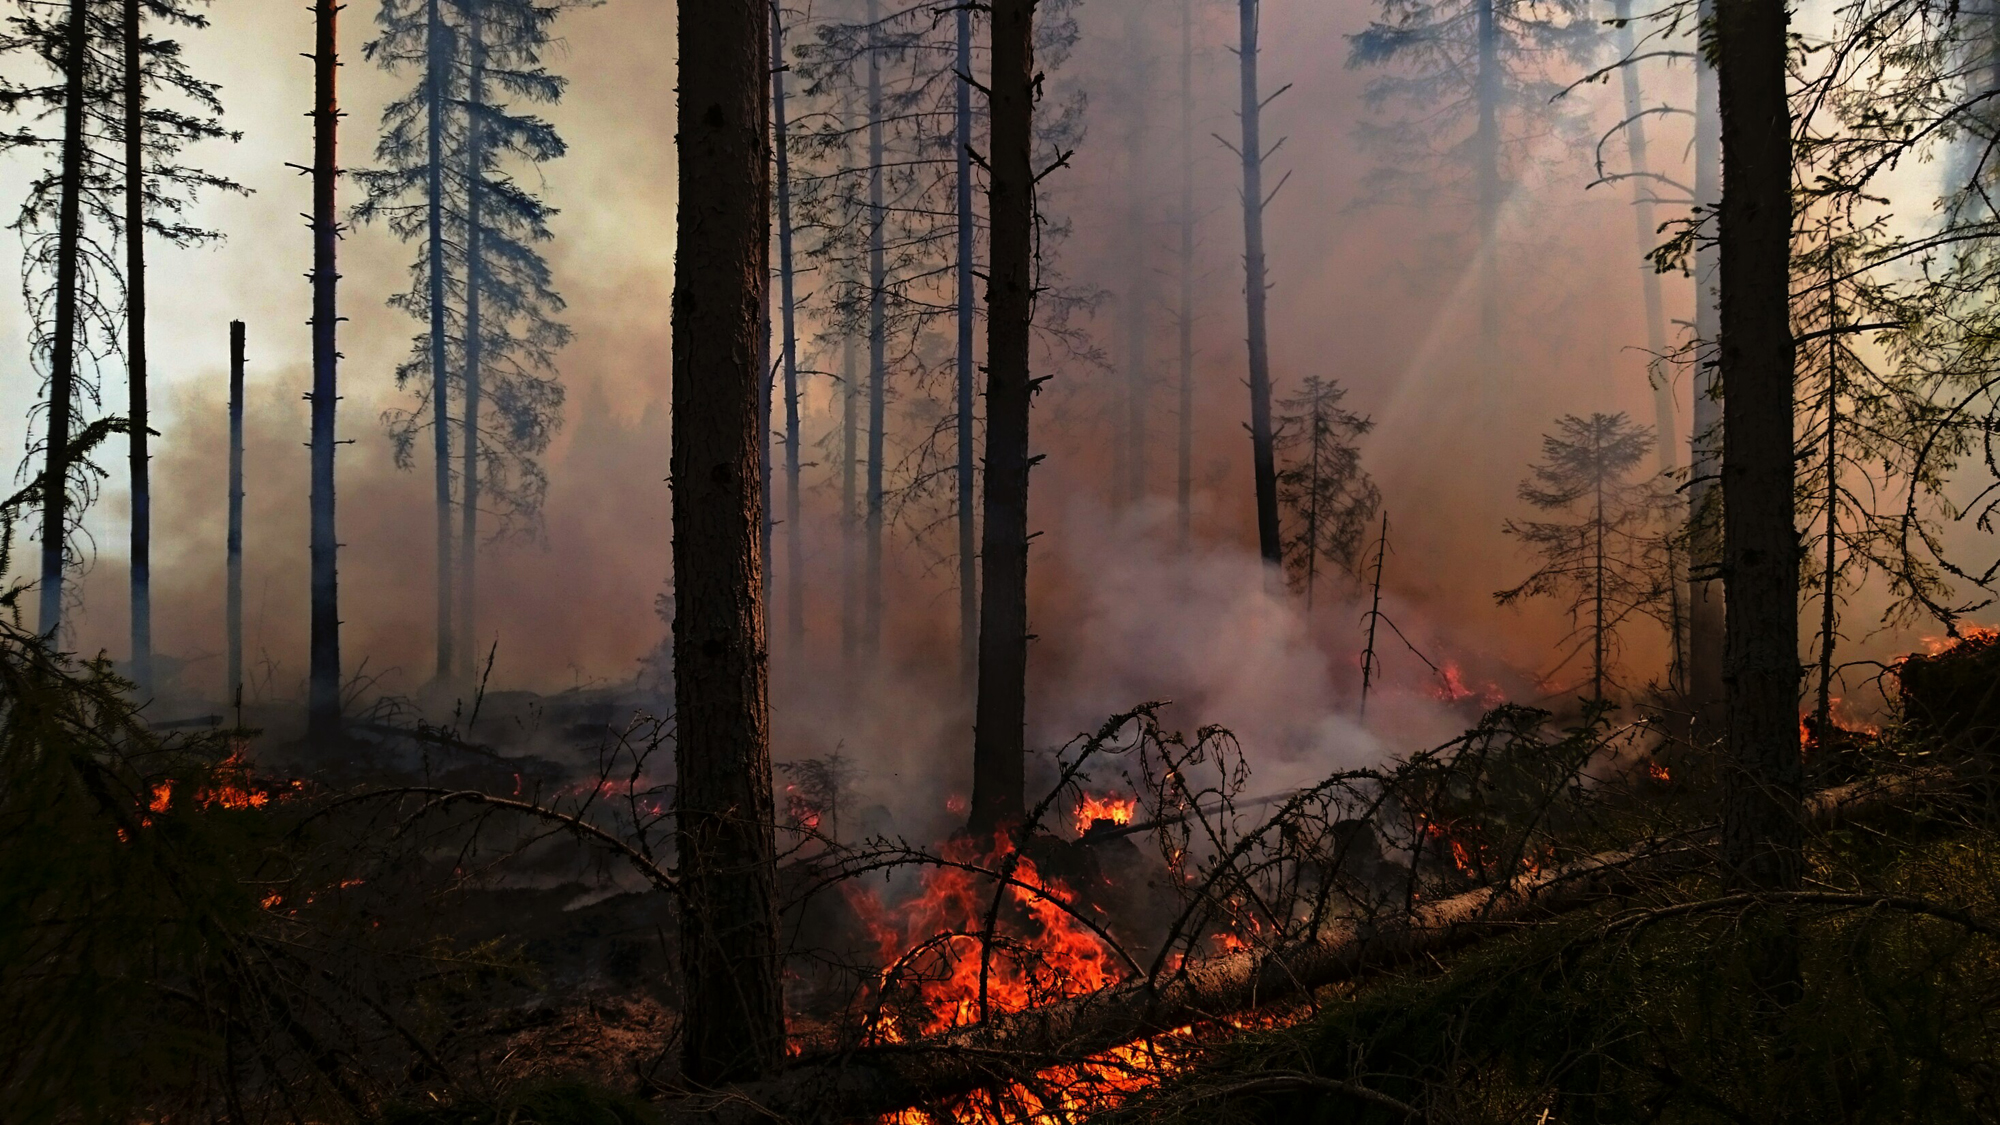 Luonnonhoidollisilla poltoilla metsään saadaan lahopuuta ja palanutta puuta, joista moni uhanalainen laji on riippuvainen. Kuva: Jukka Laulainen